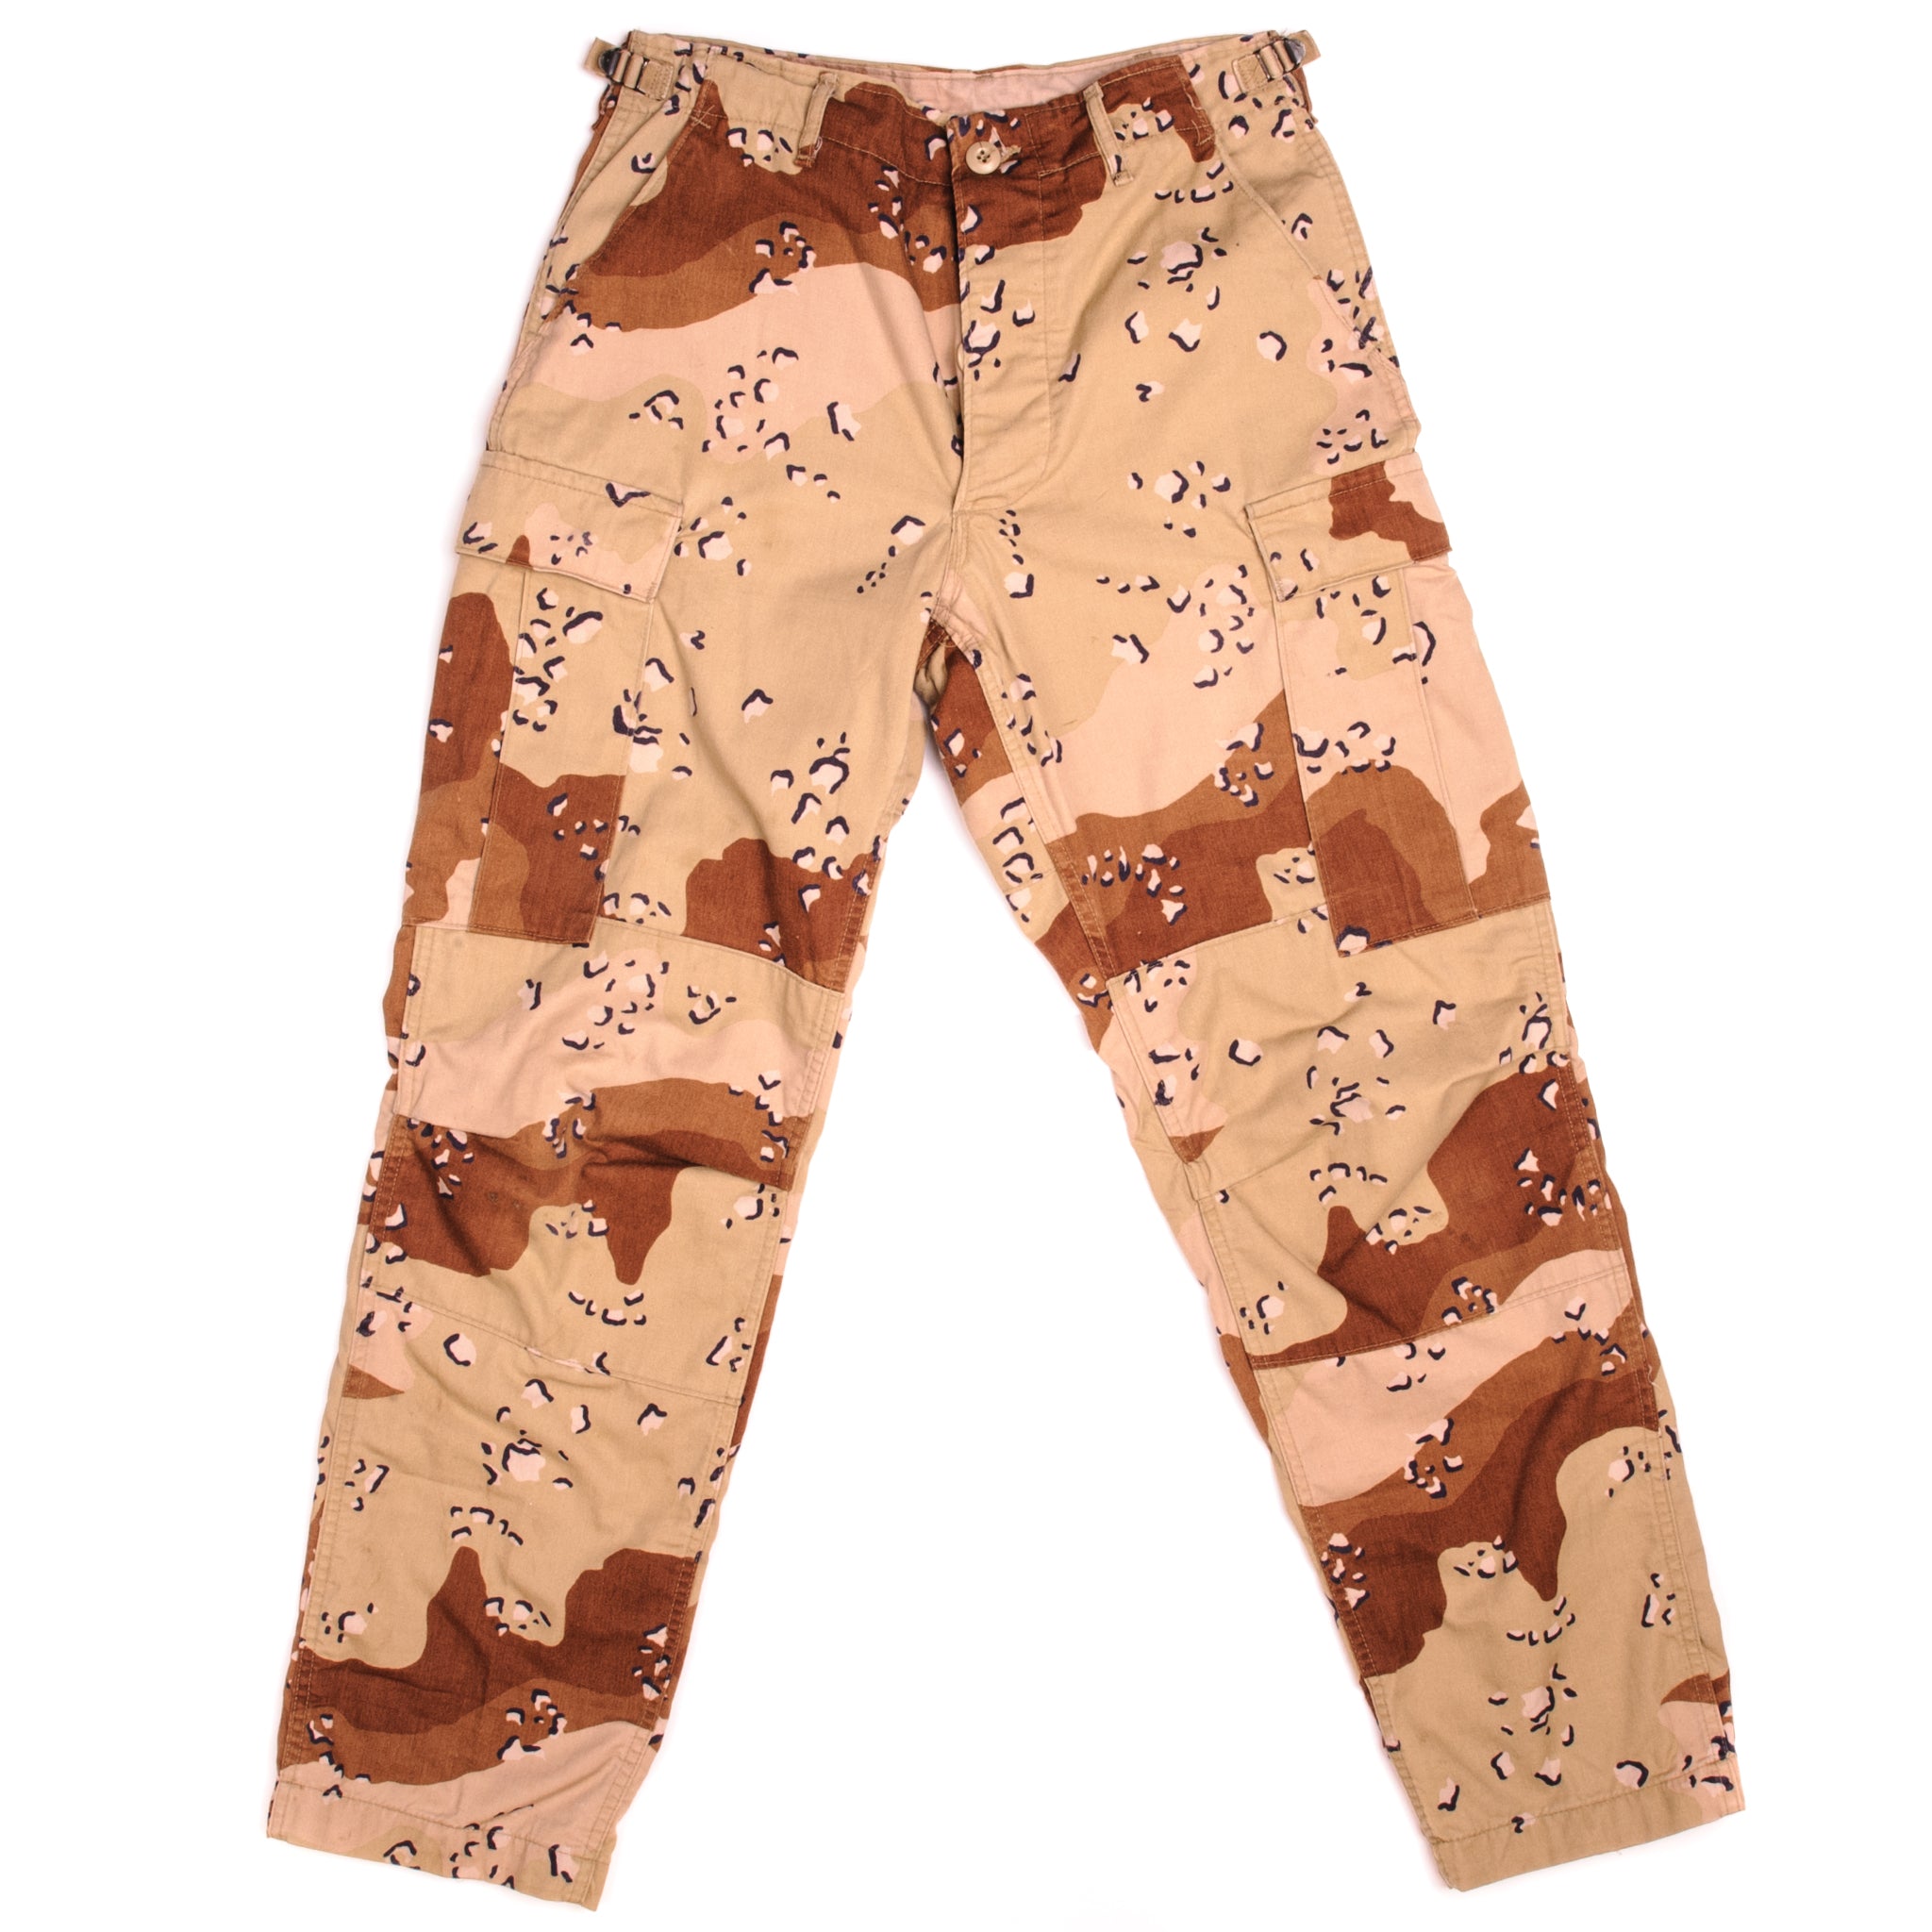 Men's (UNISEX) Vintage US Army BDU CARGO Combat Pants, Vintage ** THE –  camoLOTS.com